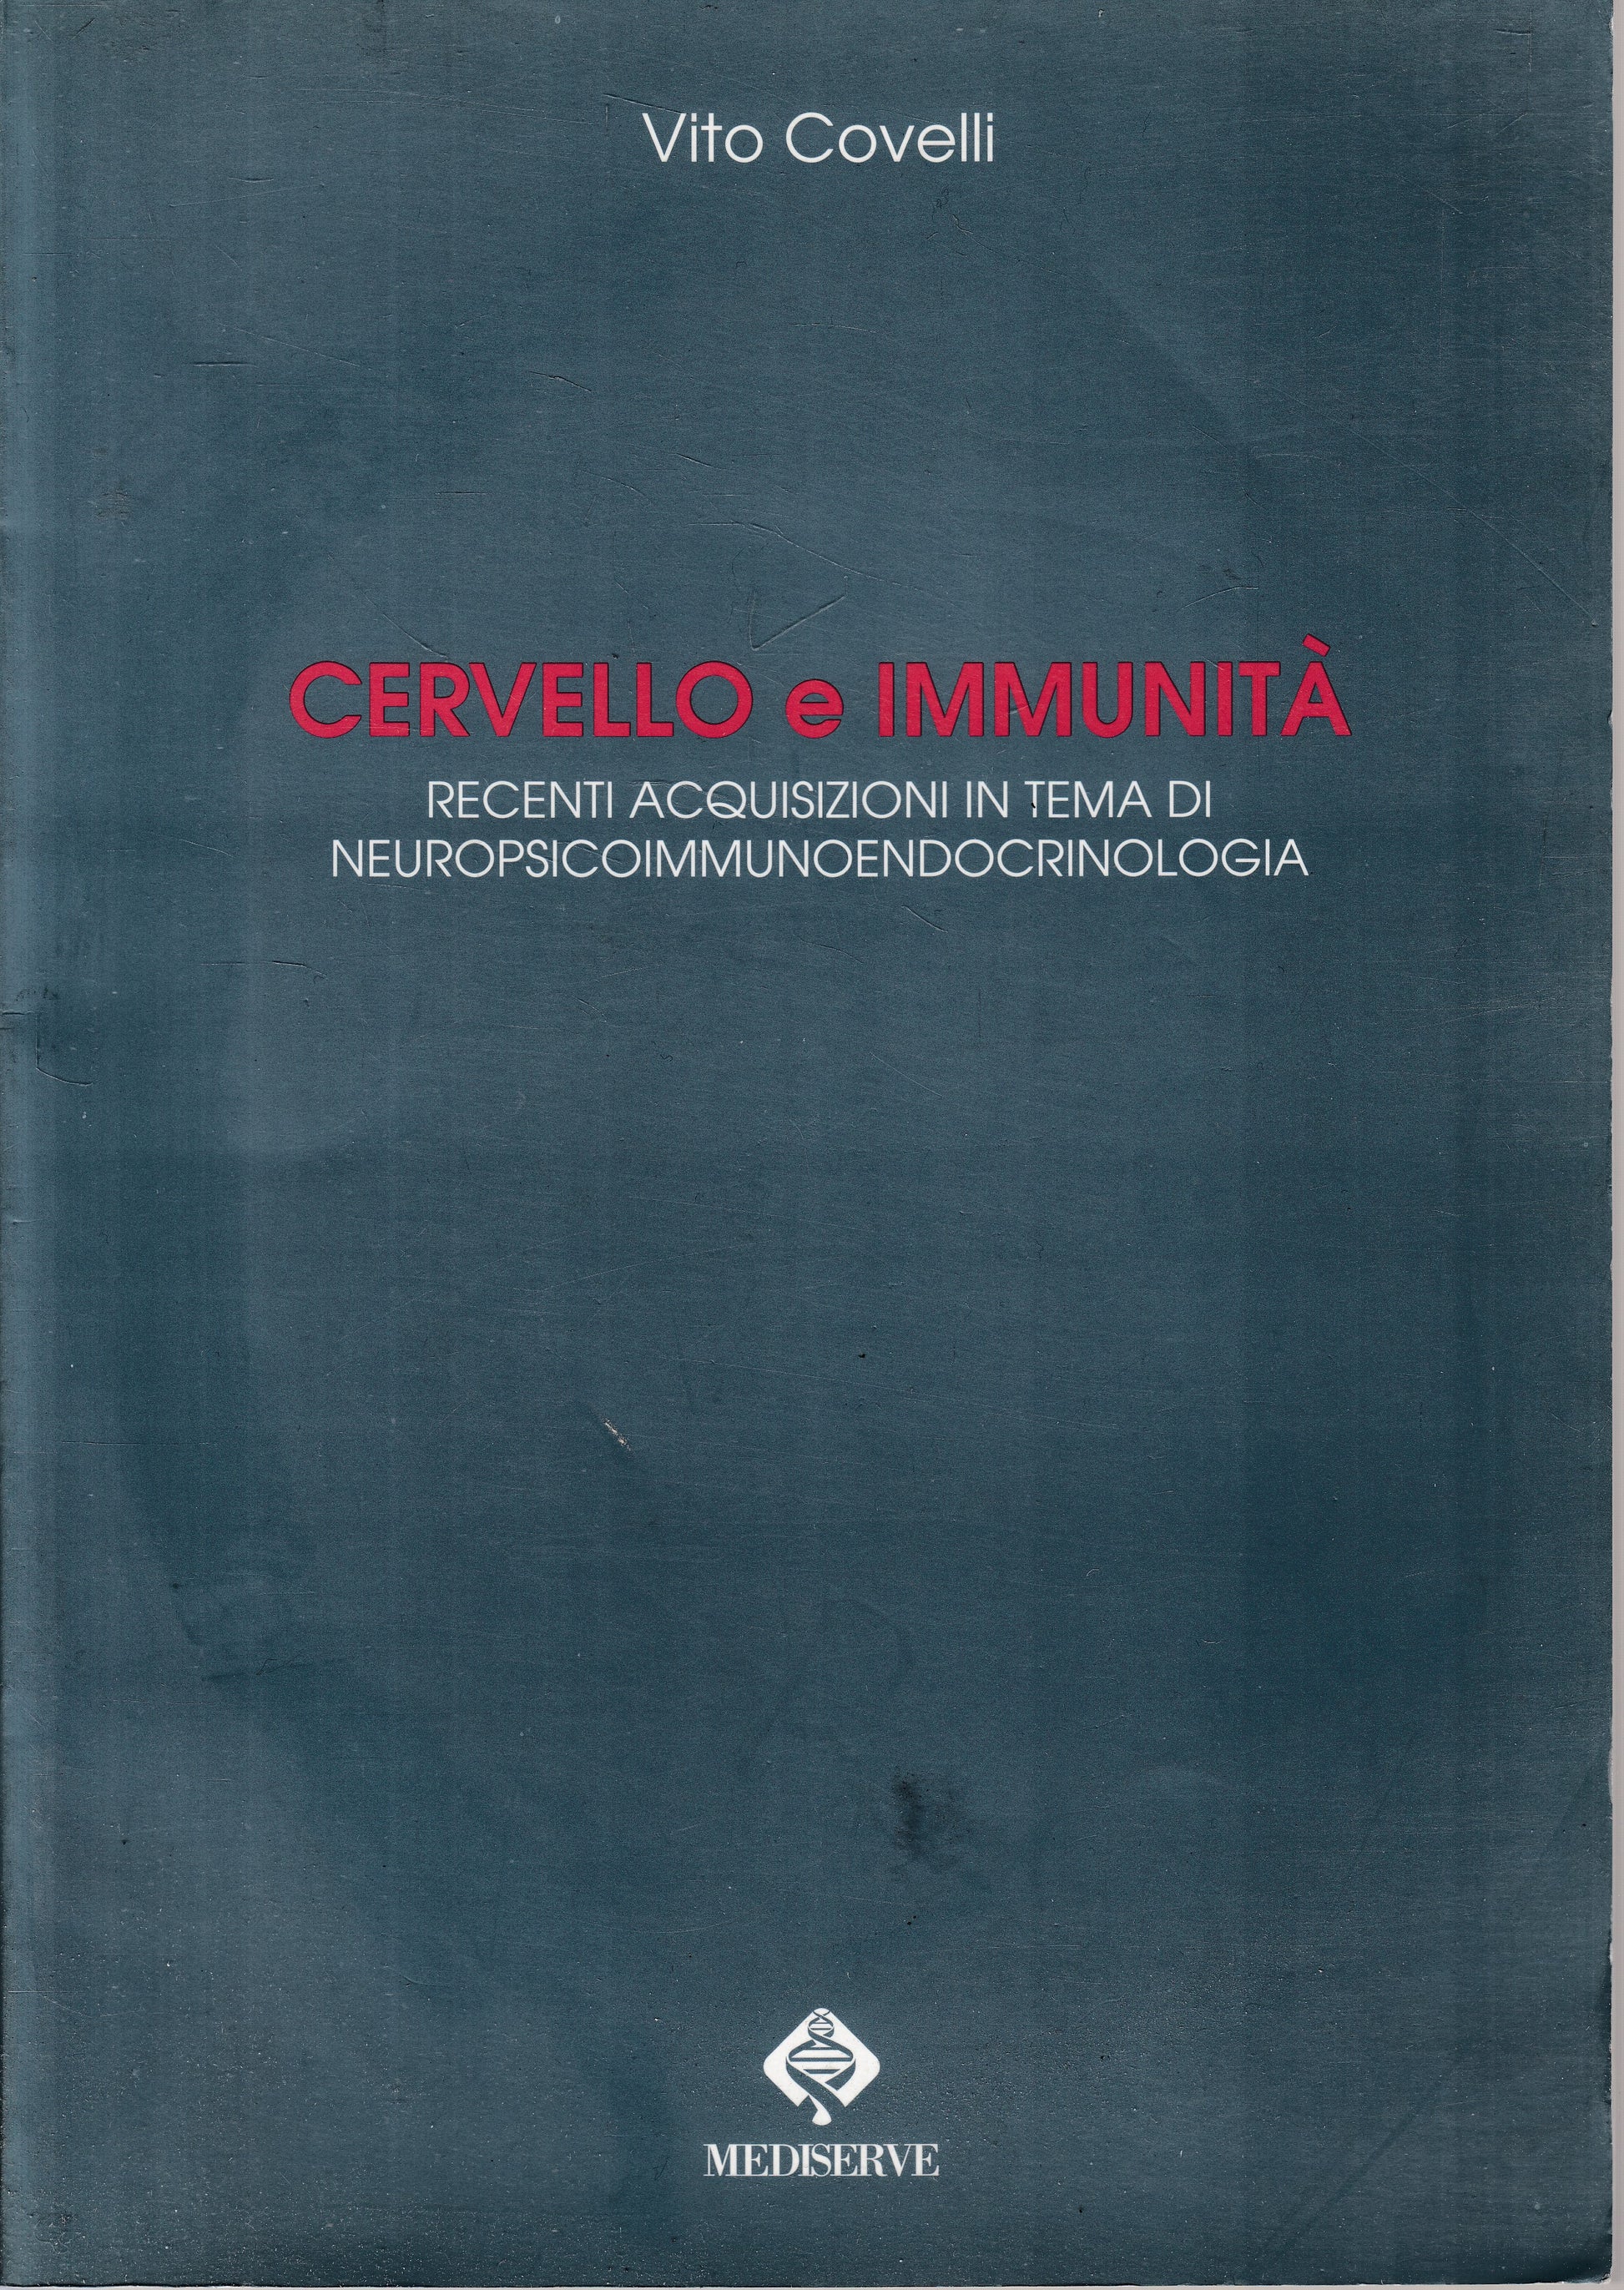 LZ- CERVELLO E IMMUNITA' - VITO COVELLI - MEDISERVE --- 1998 - B - YDS562